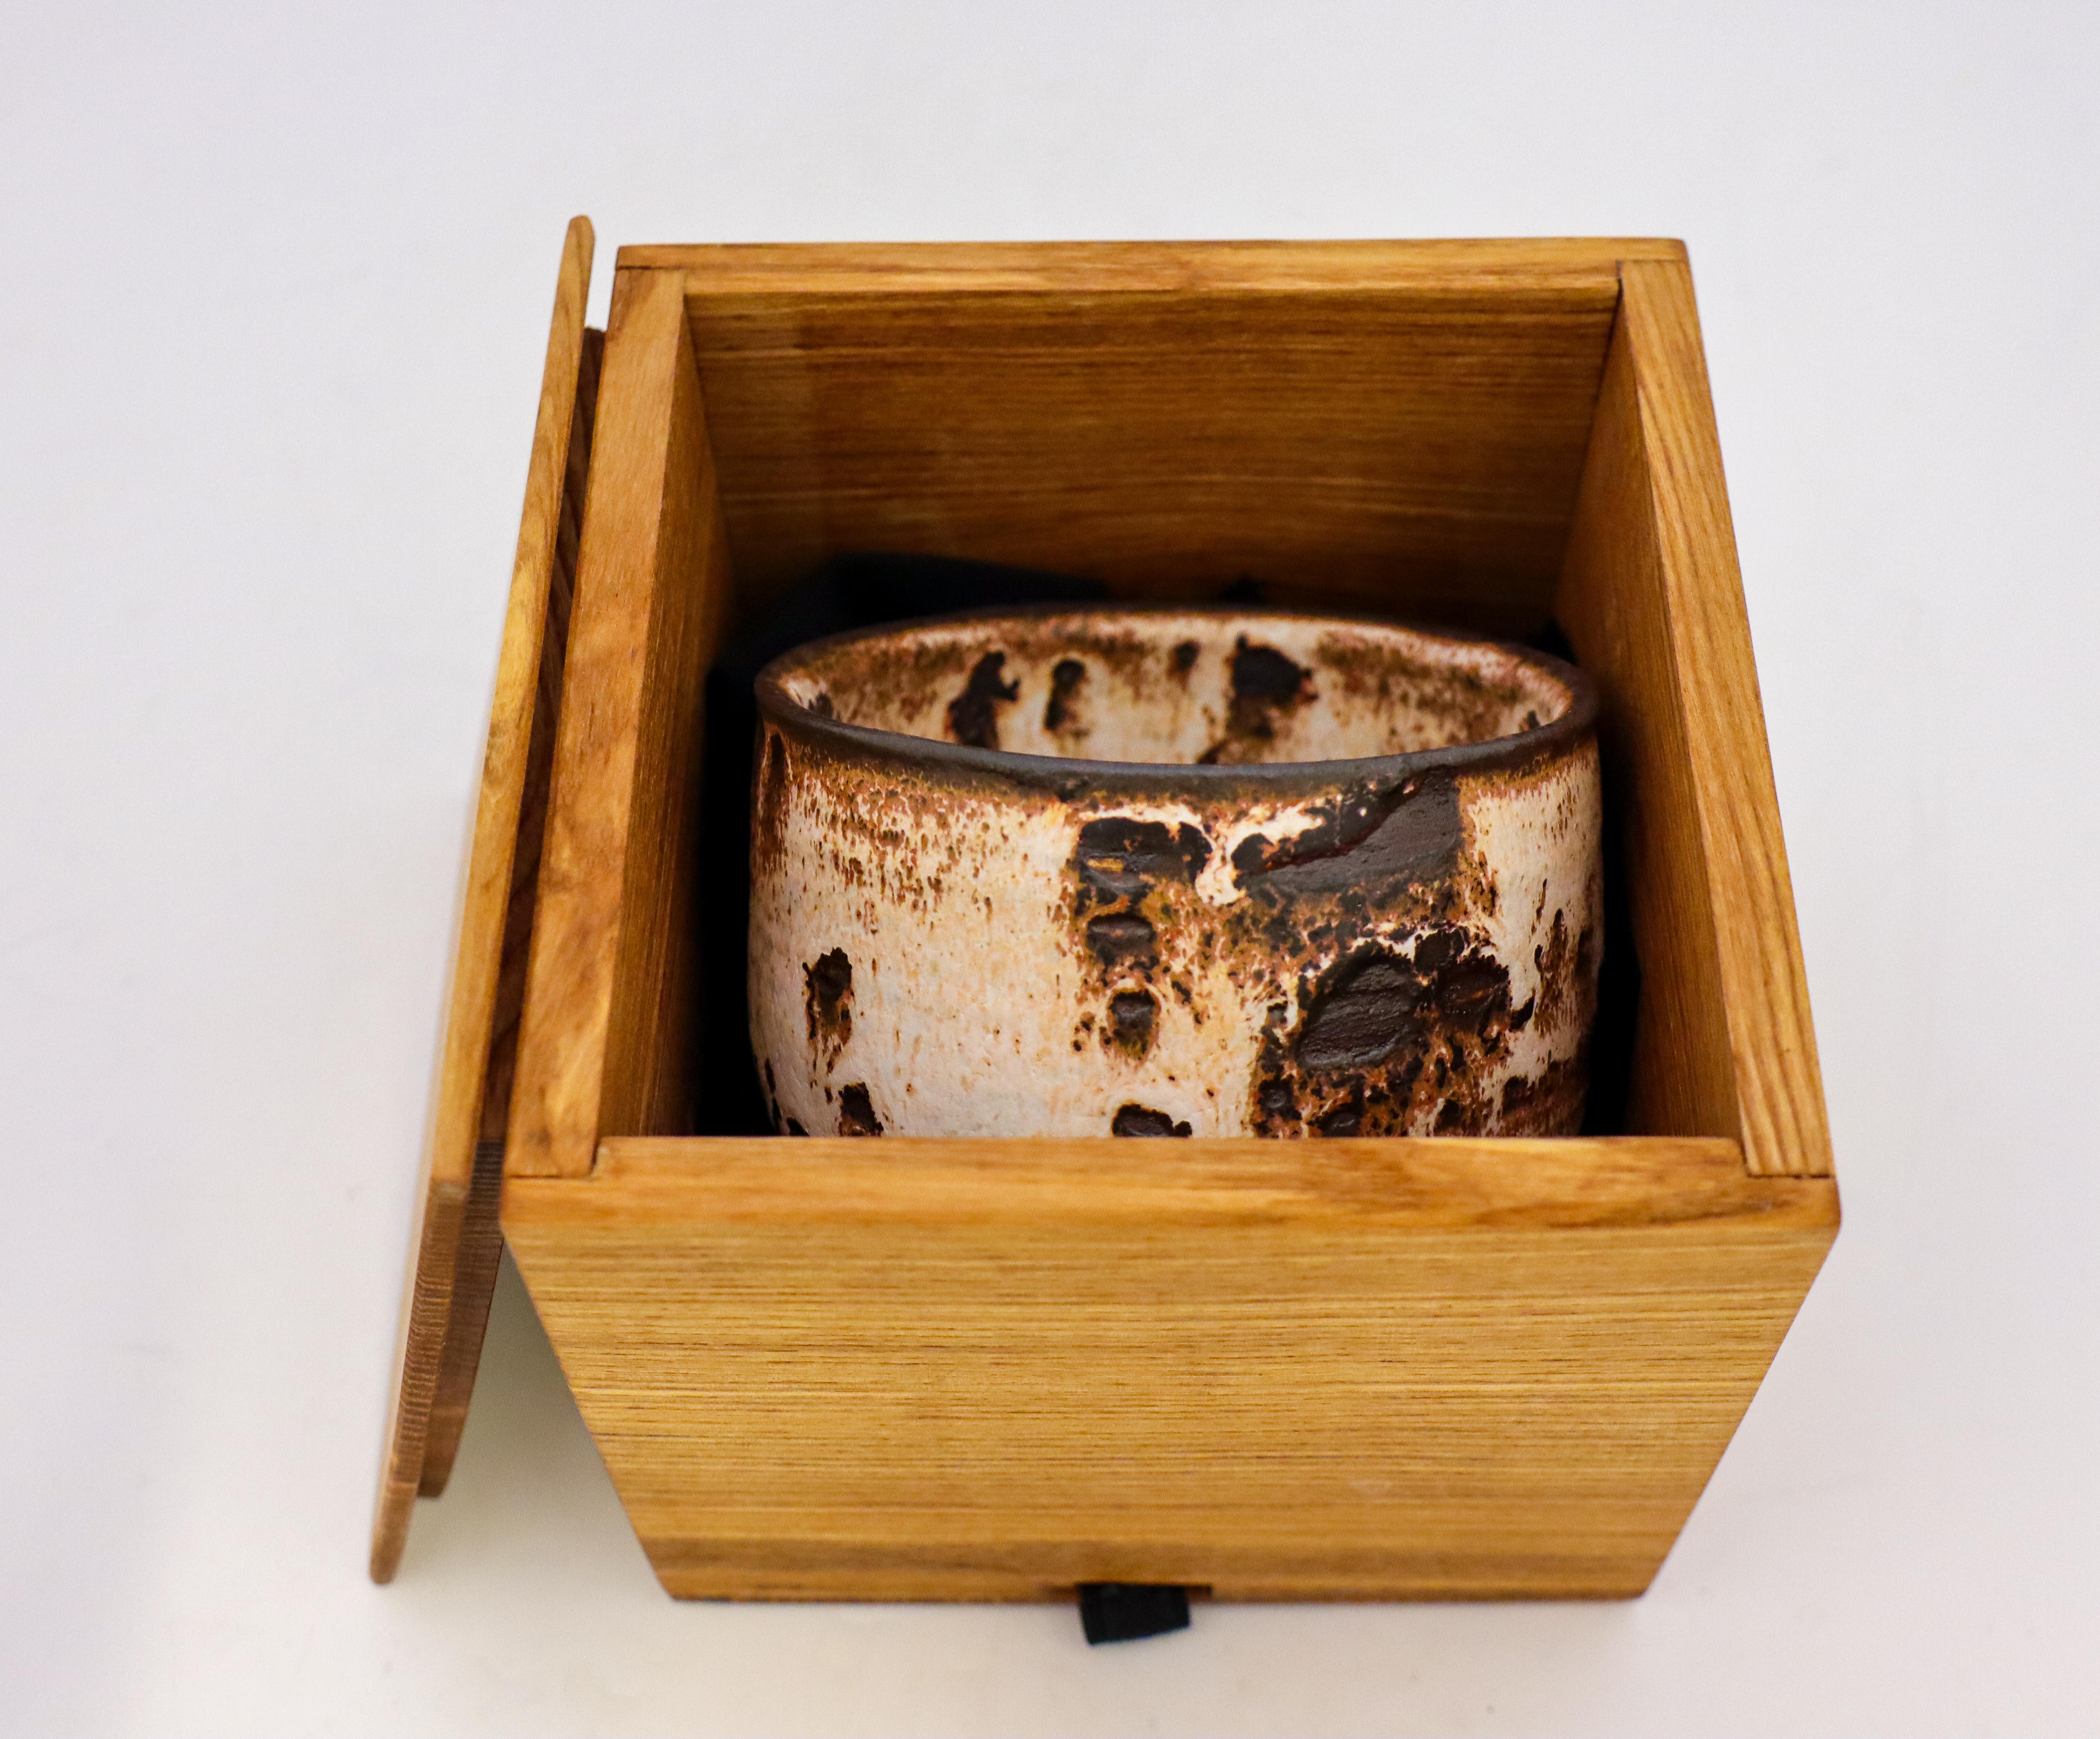 Un magnifique bol à thé ou chawan brun et blanc avec une glaçure shino conçu par l'artiste suédois contemporain Isak Isaksson dans son propre studio. Le bol mesure 11 cm de diamètre et 7 cm de hauteur. Il est en parfait état. Ces bols sont